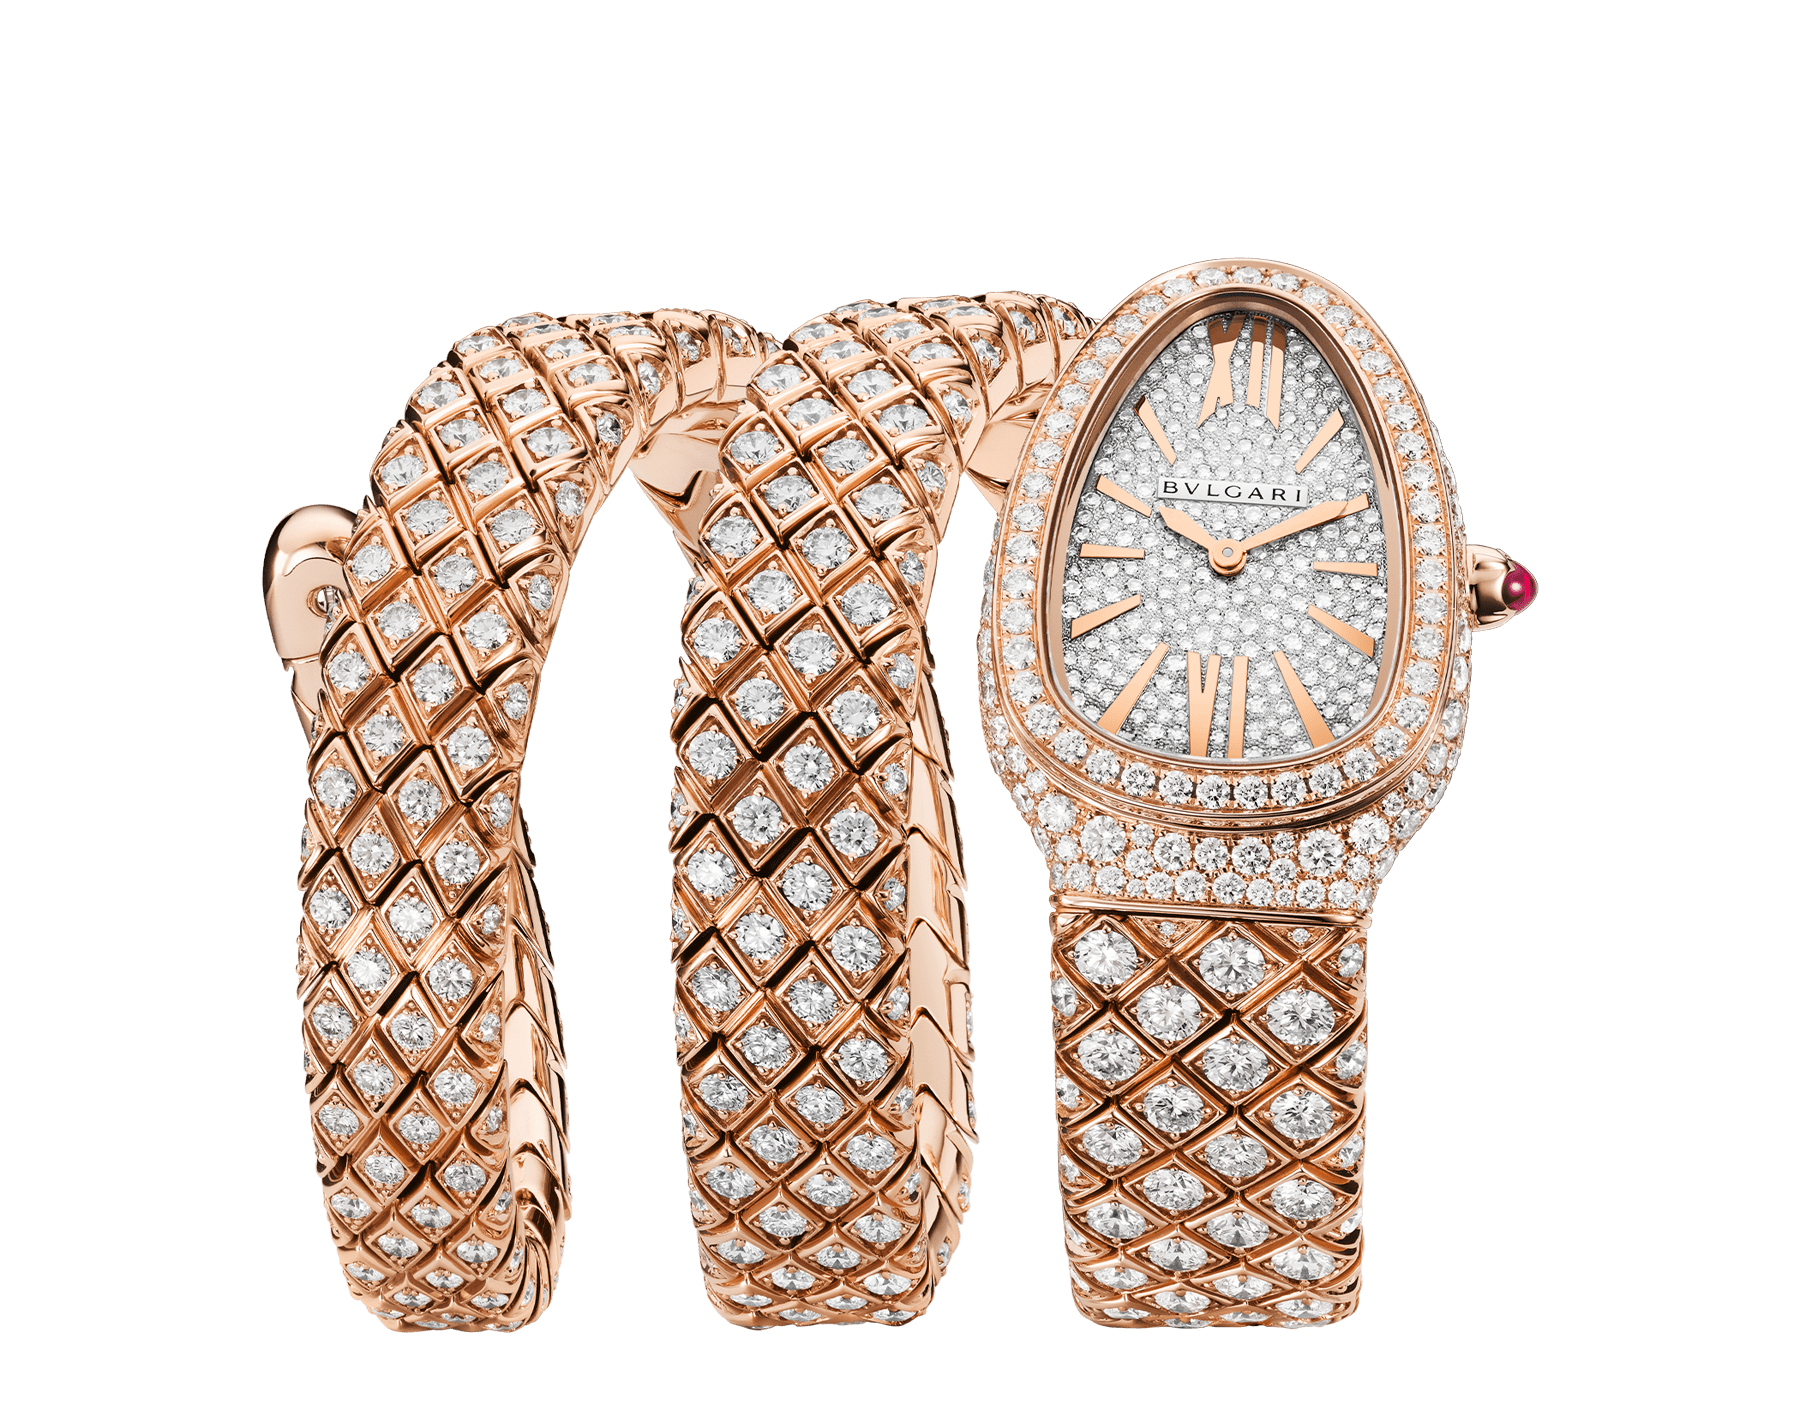 Orologio di Alta Gioielleria Serpenti Spiga con cassa e bracciale a doppia spirale in oro rosa 18 kt con diamanti e quadrante con pavé di diamanti. Impermeabile fino a 30 metri. 103616 image 1